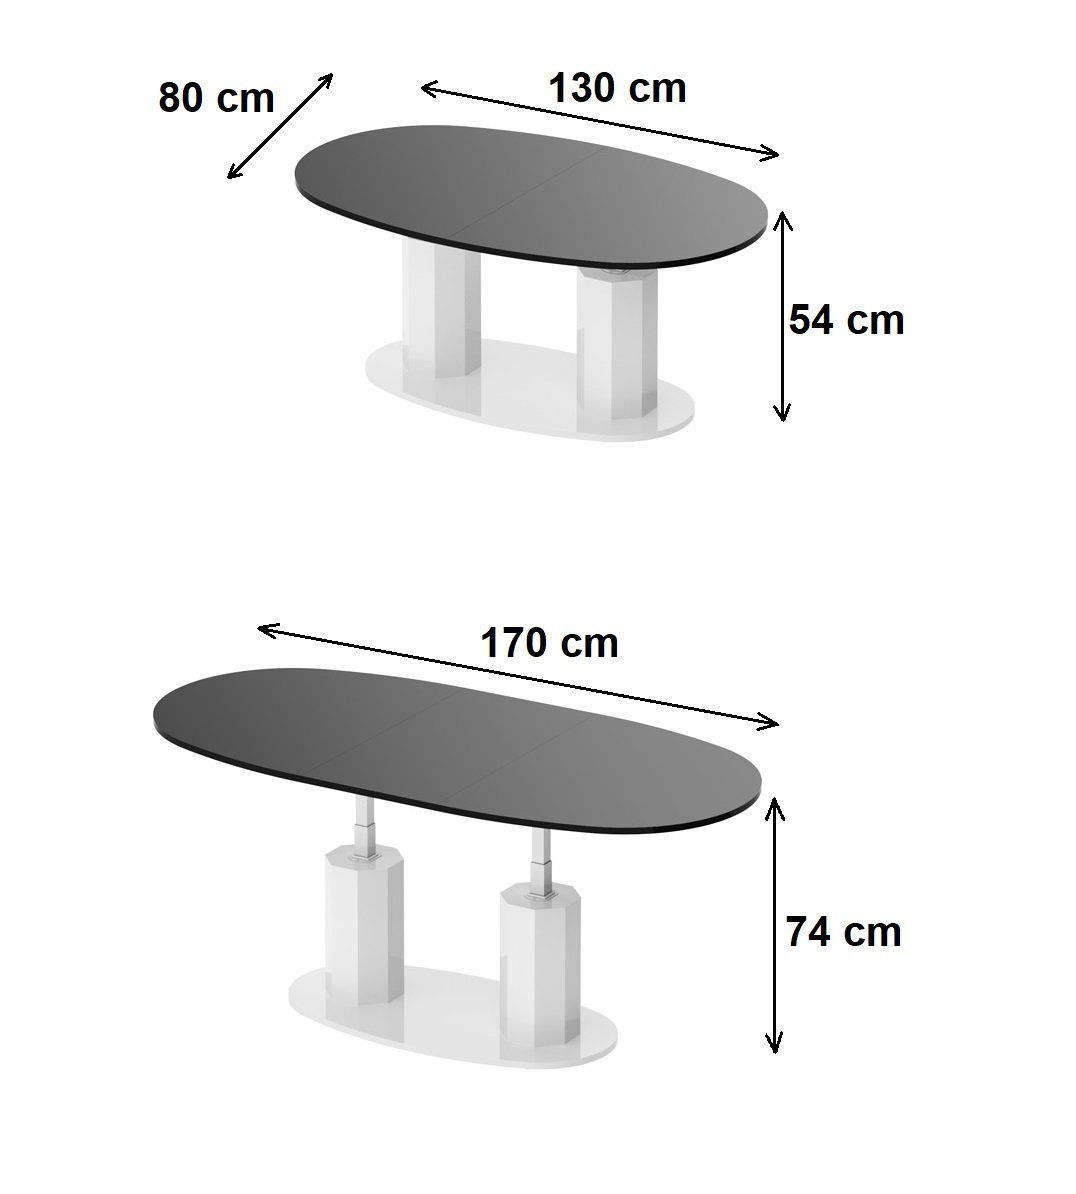 Couchtisch Hochglanz Design / Beton HBL-111 oval stufenlos Weiß Couchtisch designimpex höhenverstellbar ausziehbar